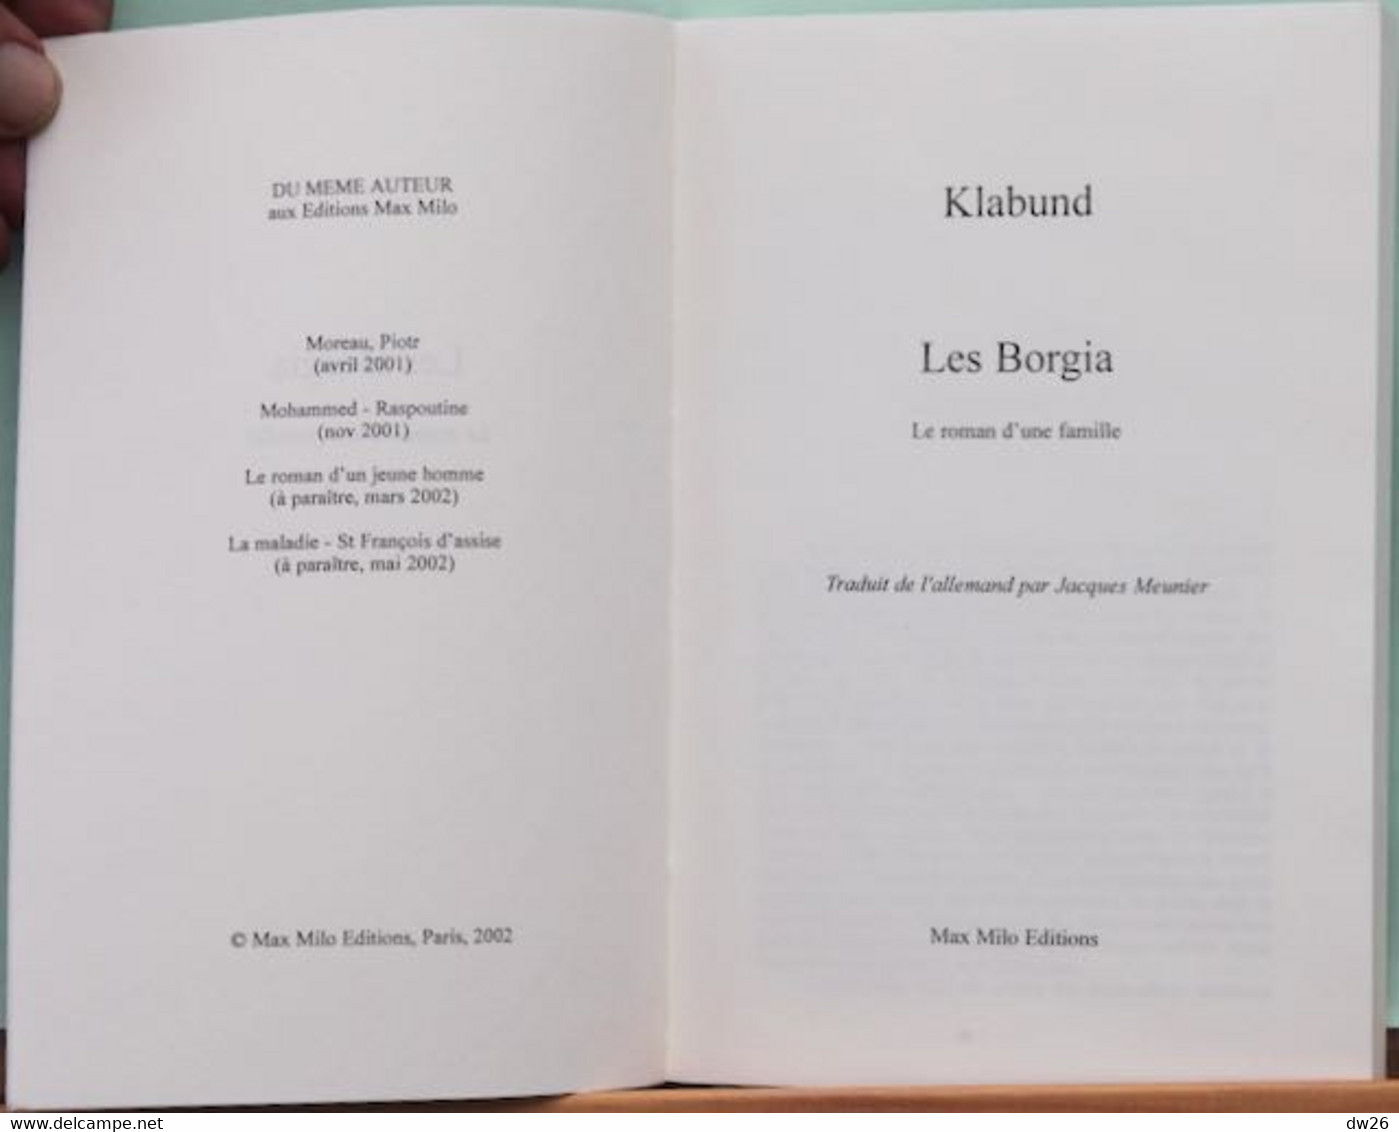 Histoire - Roman D'une Famille: Les Borgia Par Klabund, Traduction Jacques Meunier - Editions Max Milo 2002 - Geschiedenis